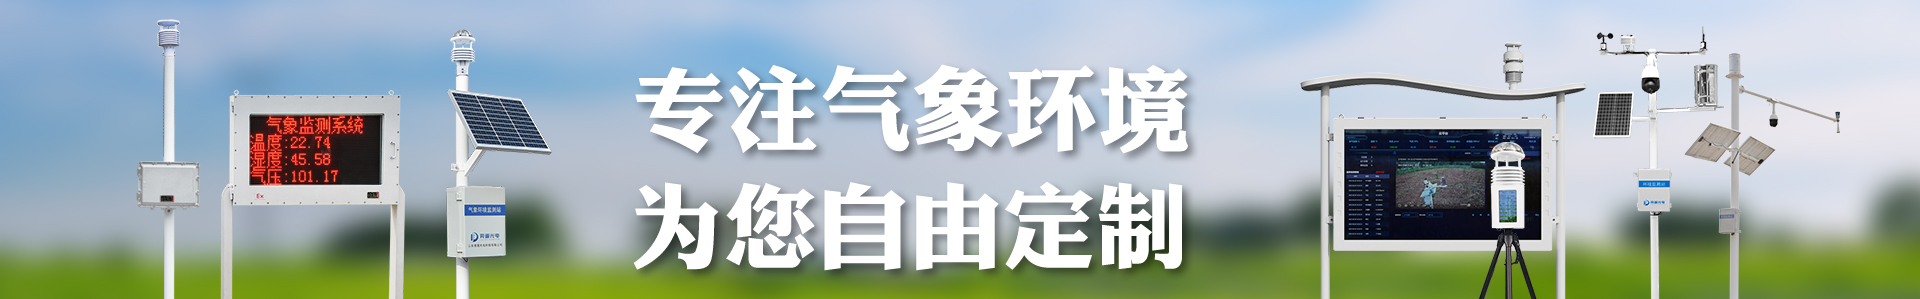 机场气象站-通用机场气象站-自动气象站-小型气象站-防爆气象站-光伏气象站-南宫NG·28(中国)官方网站